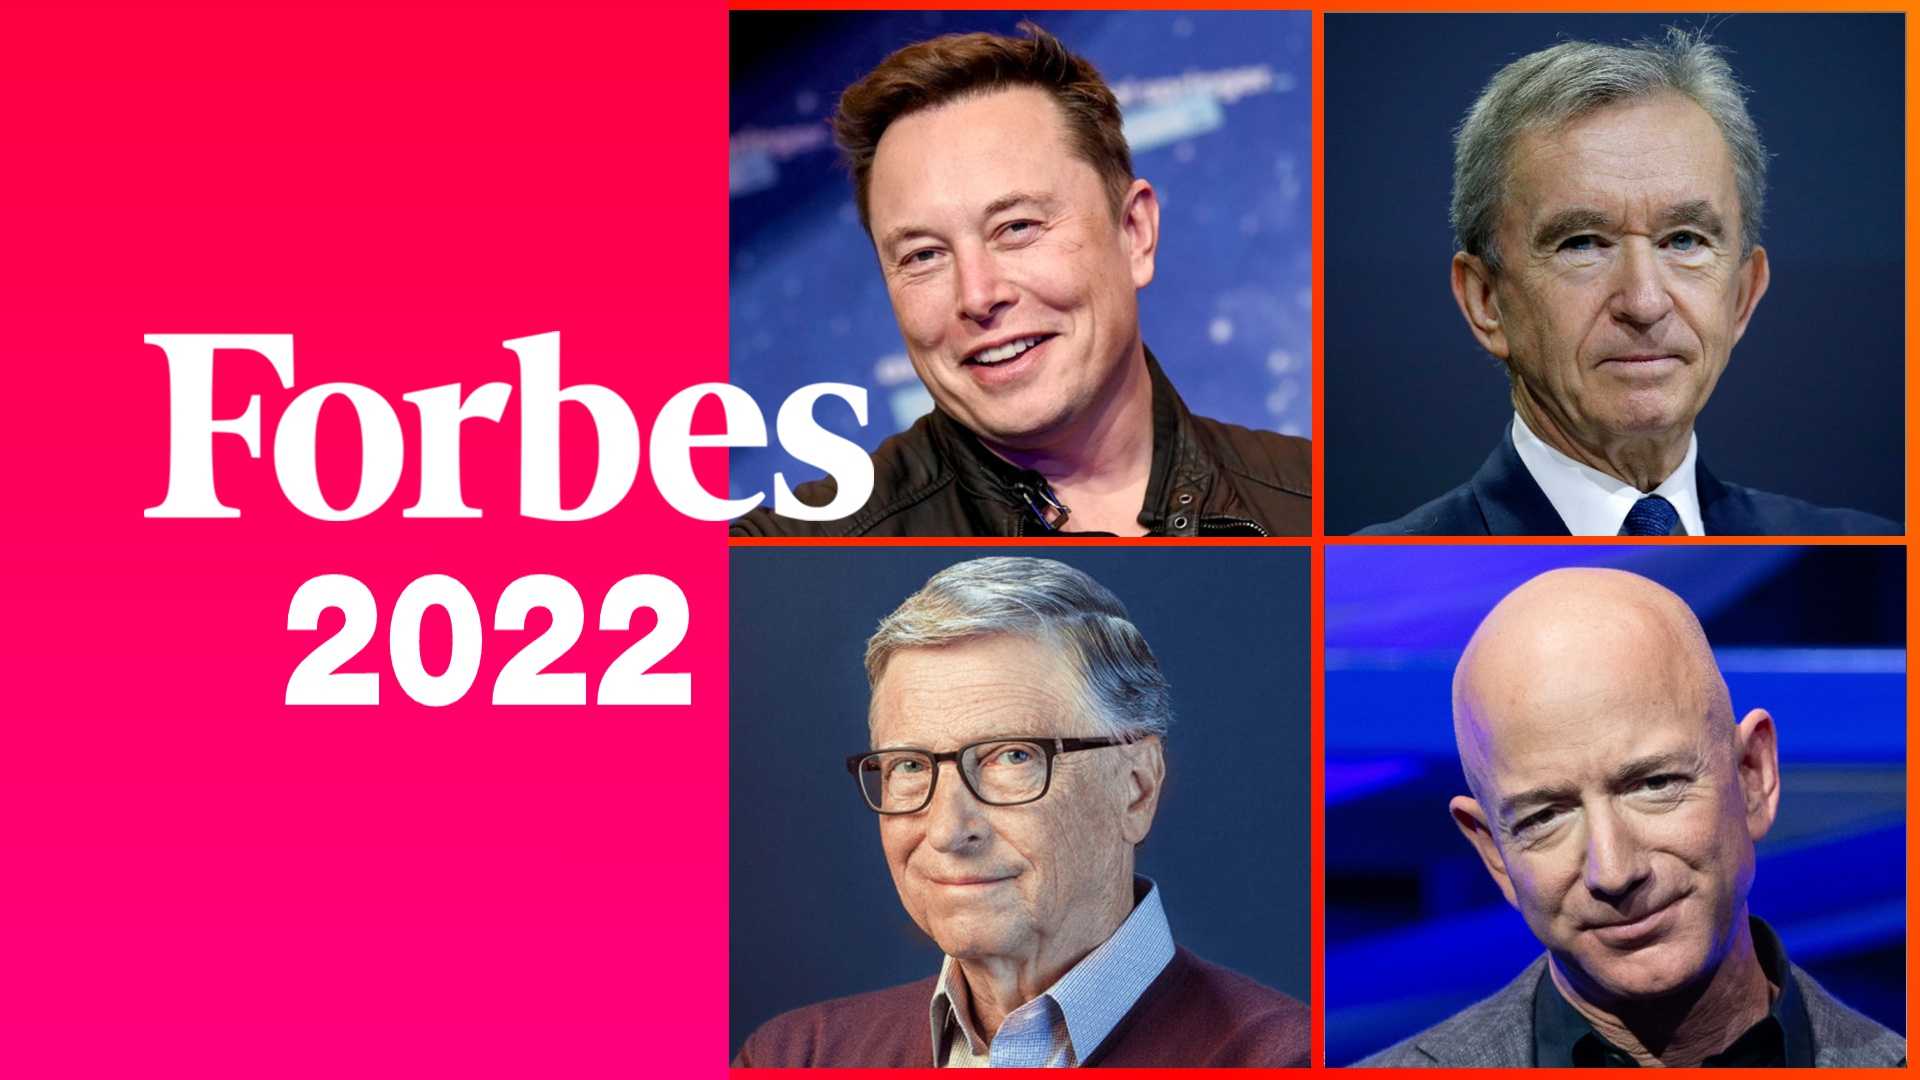 Самые влиятельные люди мира 2022 года по версии журнала Time Топ самых влиятельных персон мира в каждой из 4 категорий журнала Time – в этом году без Путина